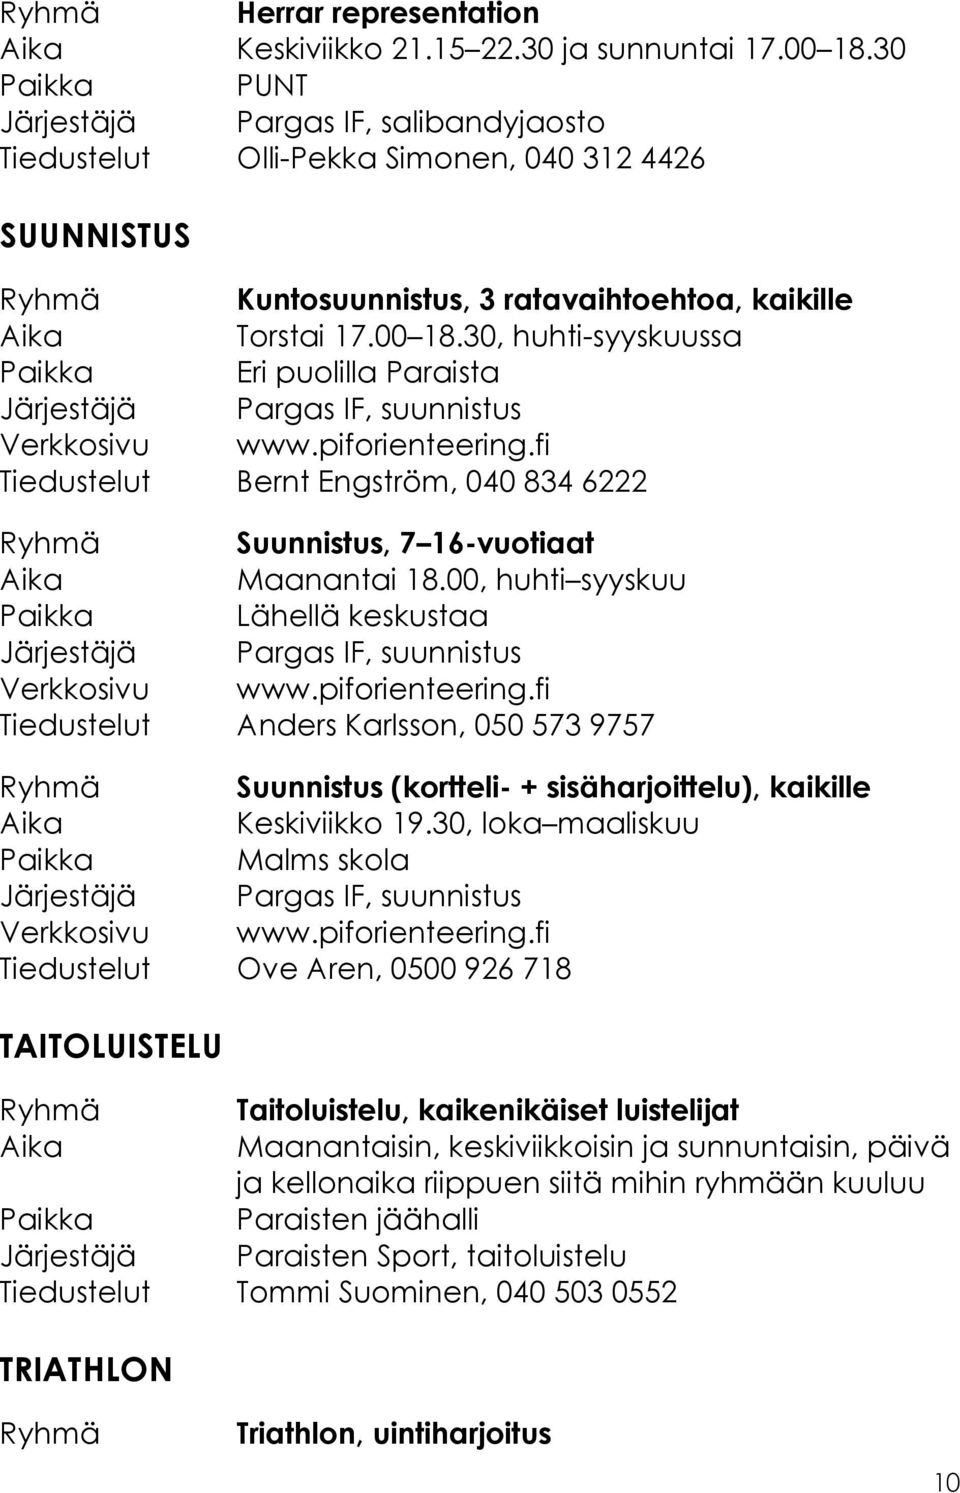 30, huhti-syyskuussa Paikka Eri puolilla Paraista Järjestäjä Pargas IF, suunnistus Verkkosivu www.piforienteering.